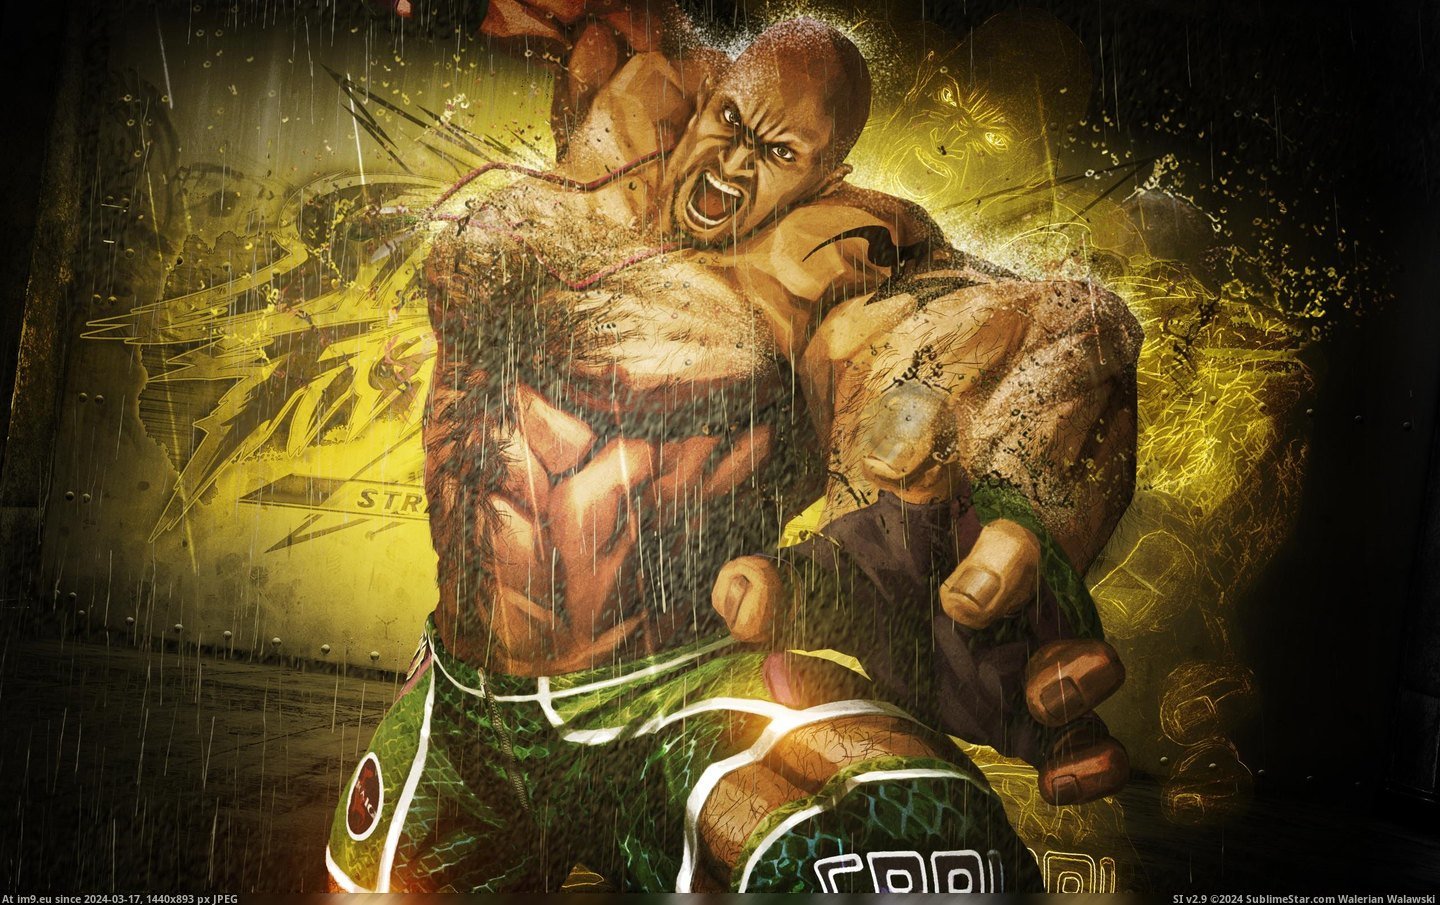 #Wallpaper #Wide #Marduk #Tekken #Craig Craig Marduk In Tekken Wide HD Wallpaper Pic. (Изображение из альбом Unique HD Wallpapers))